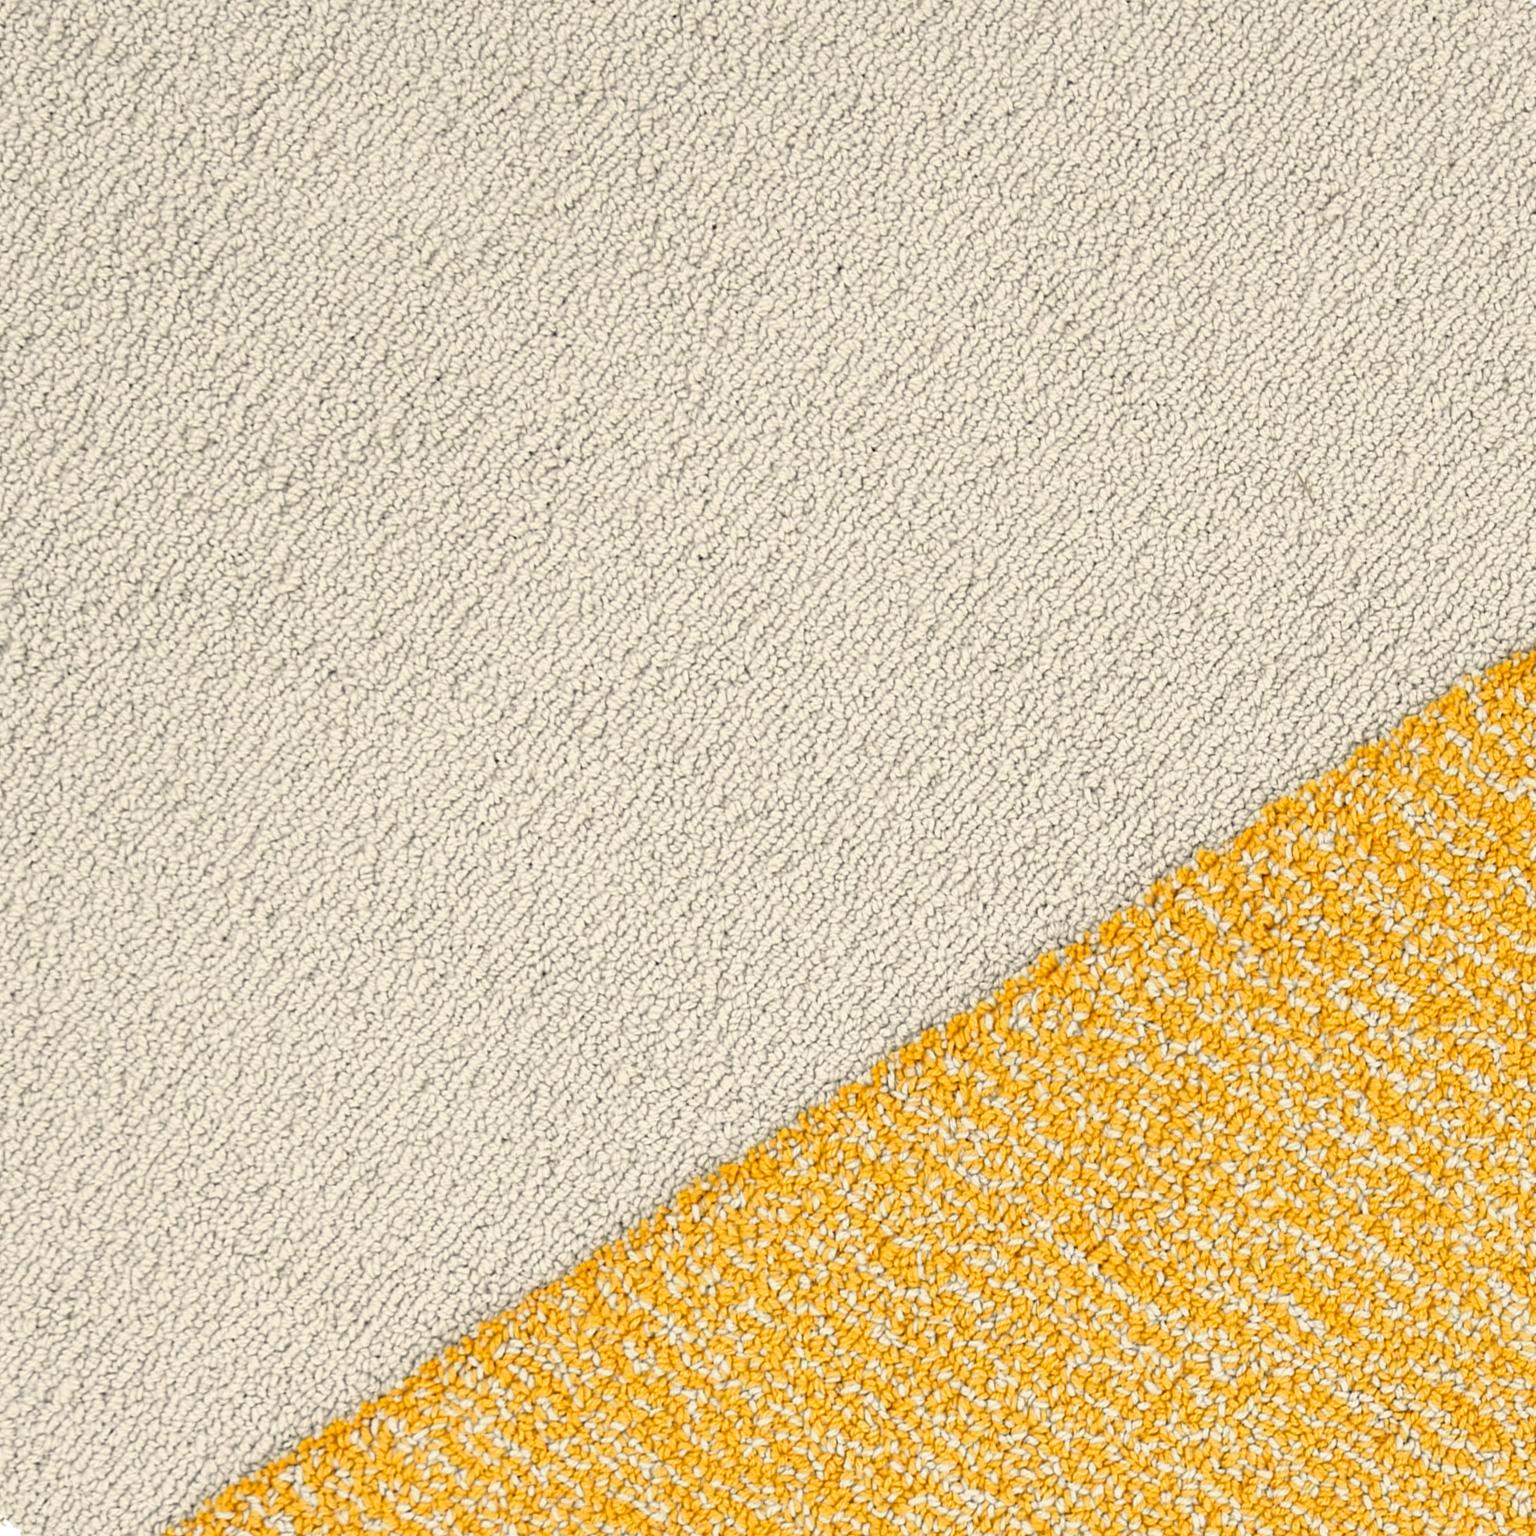 Modern OCI Left Rug M, 100% Wool / Ecru Yellow Dark Gray by Portego For Sale